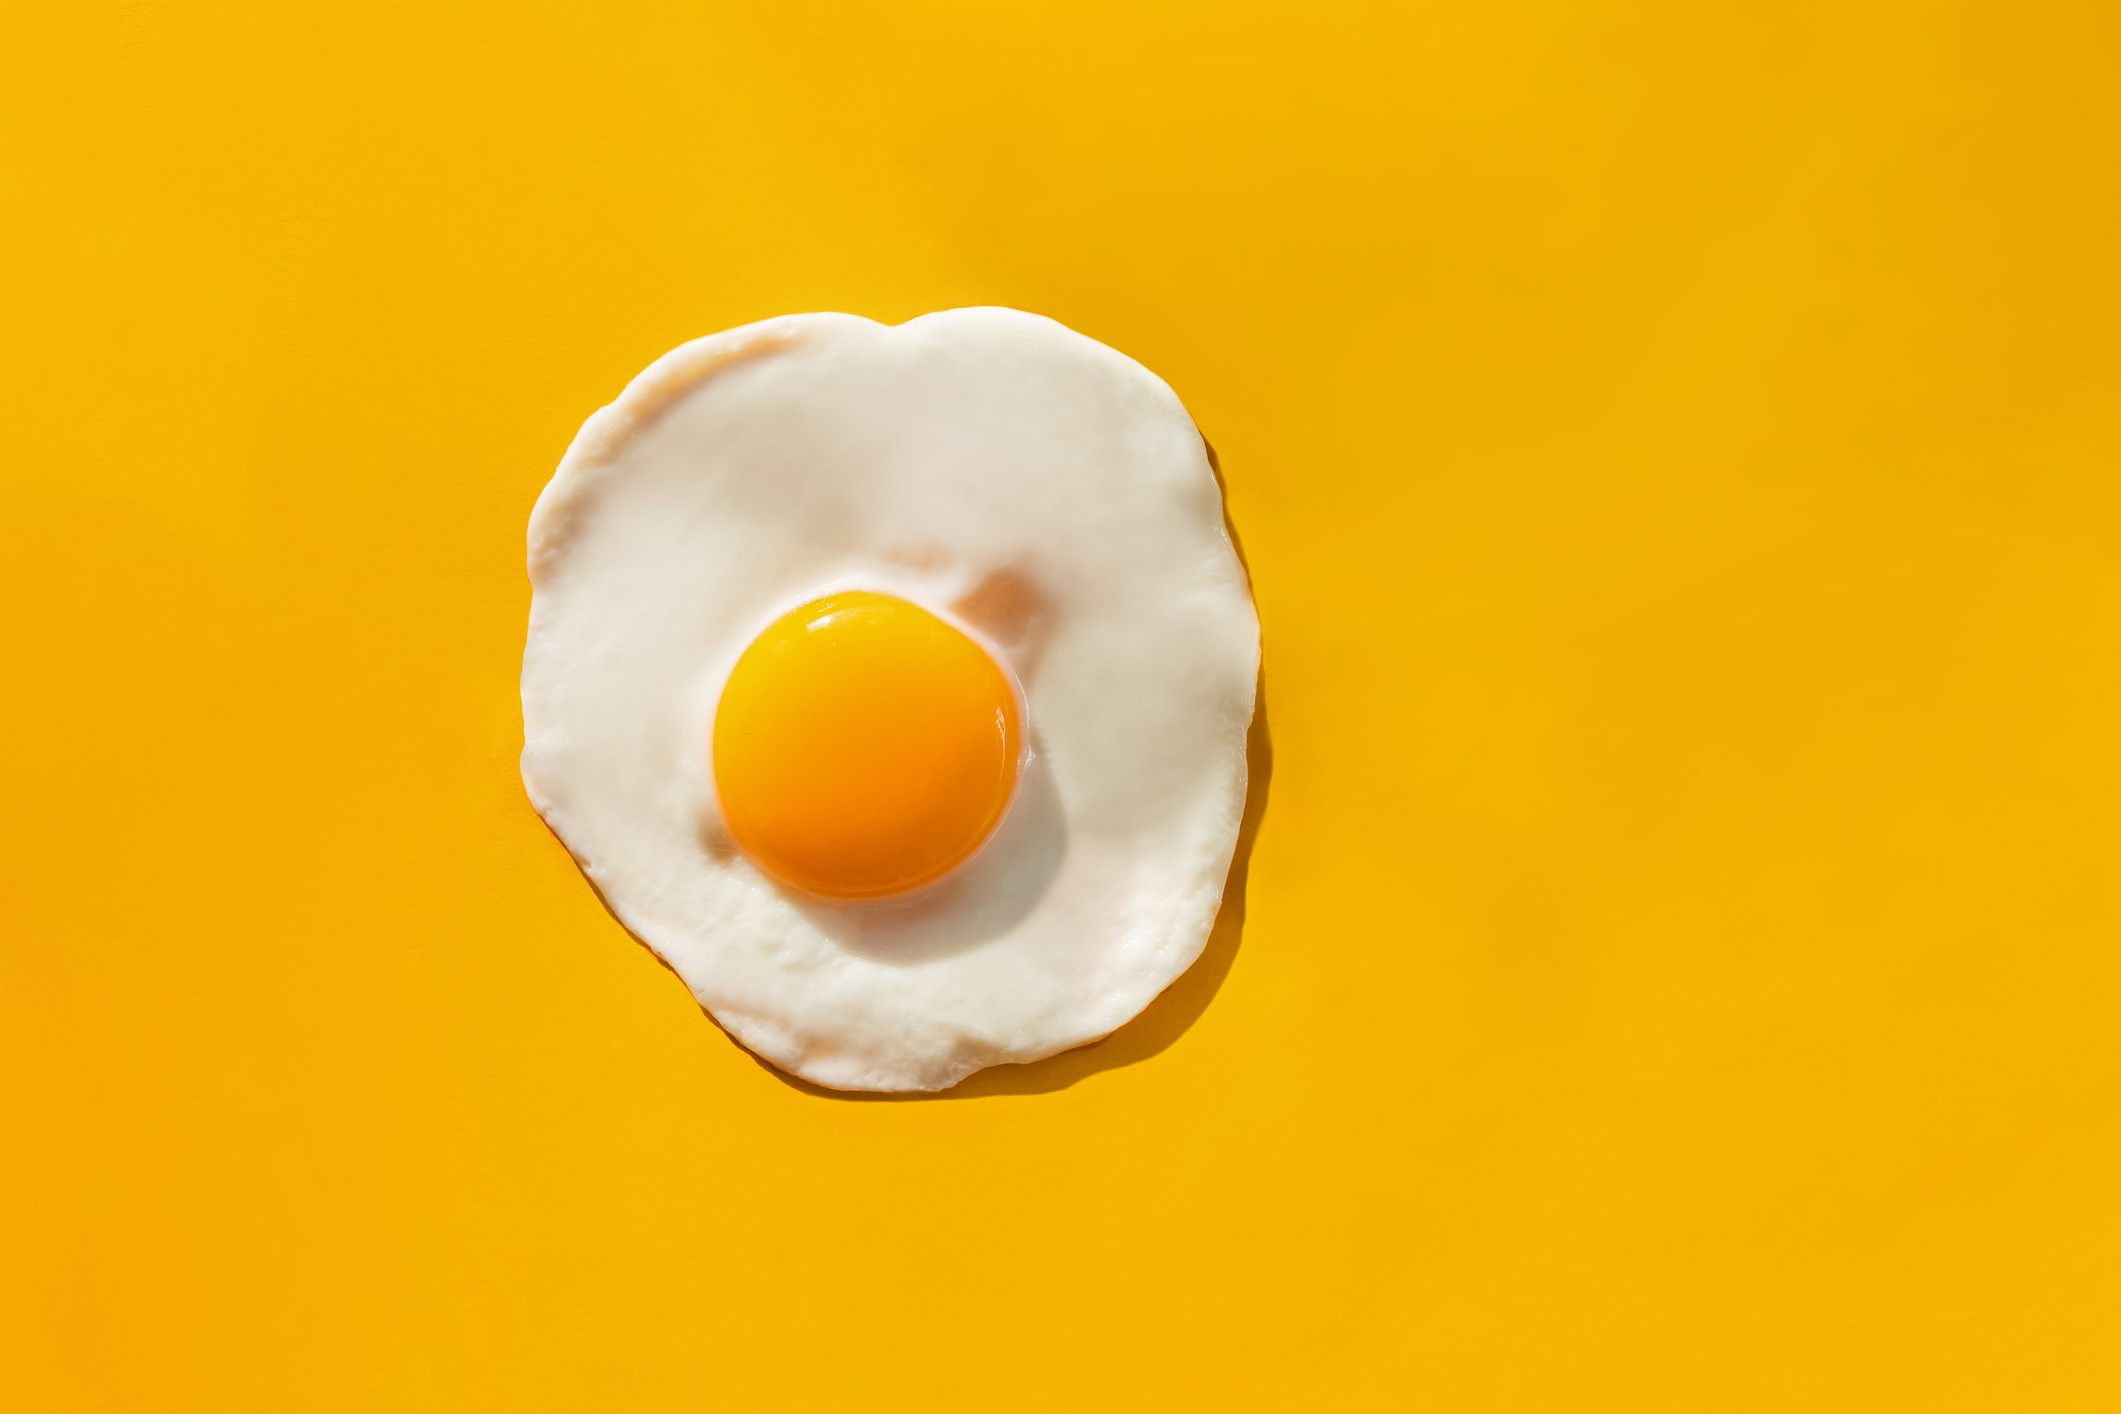 Imagem ilustrativa de um ovo com a clara e gema exposta.